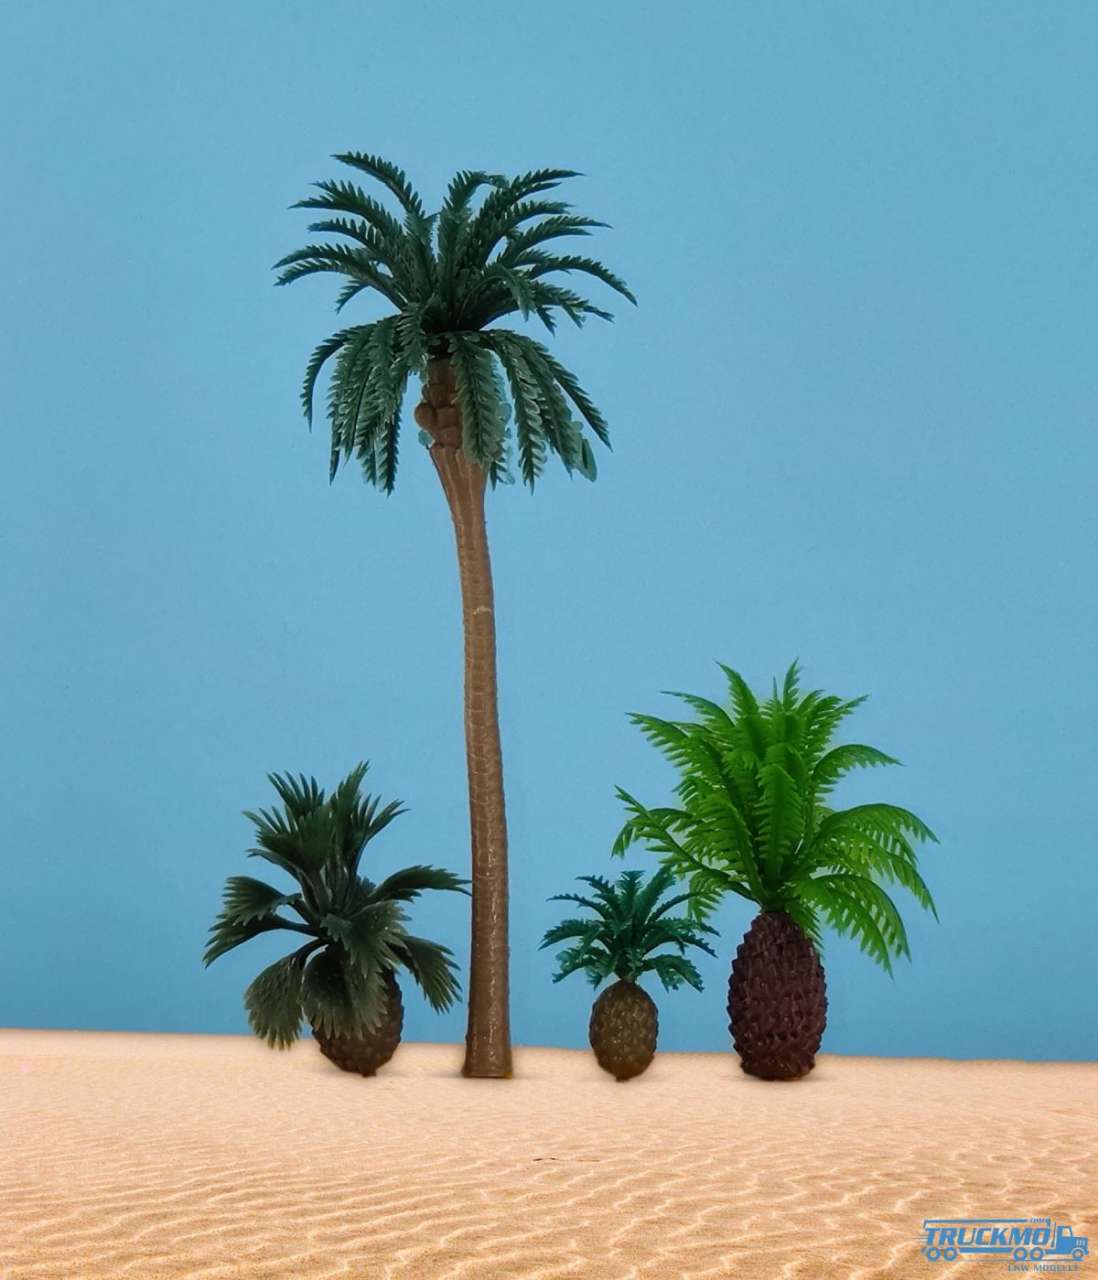 VK models 1 coconut palm 13cm 2 cycads 3 + 4cm 1 low coconut palm 5cm 37007